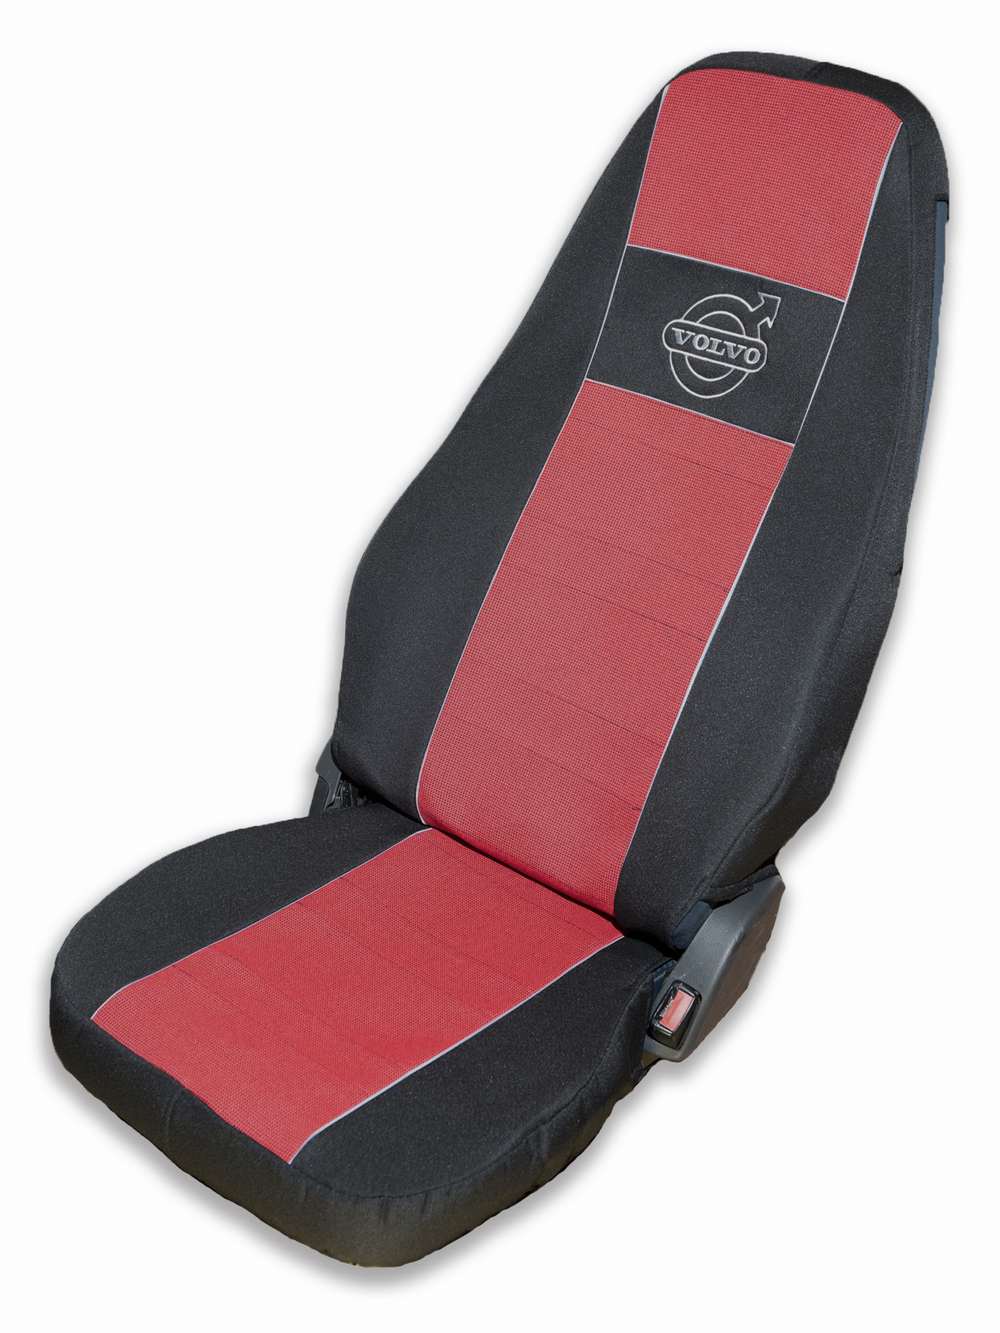 Чехлы VOLVO FH-12 до 2003 года: два высоких сиденья, ремни безопасности от стоек кабины (нет выреза под ремень) (полиэфир, черный, красная вставка)